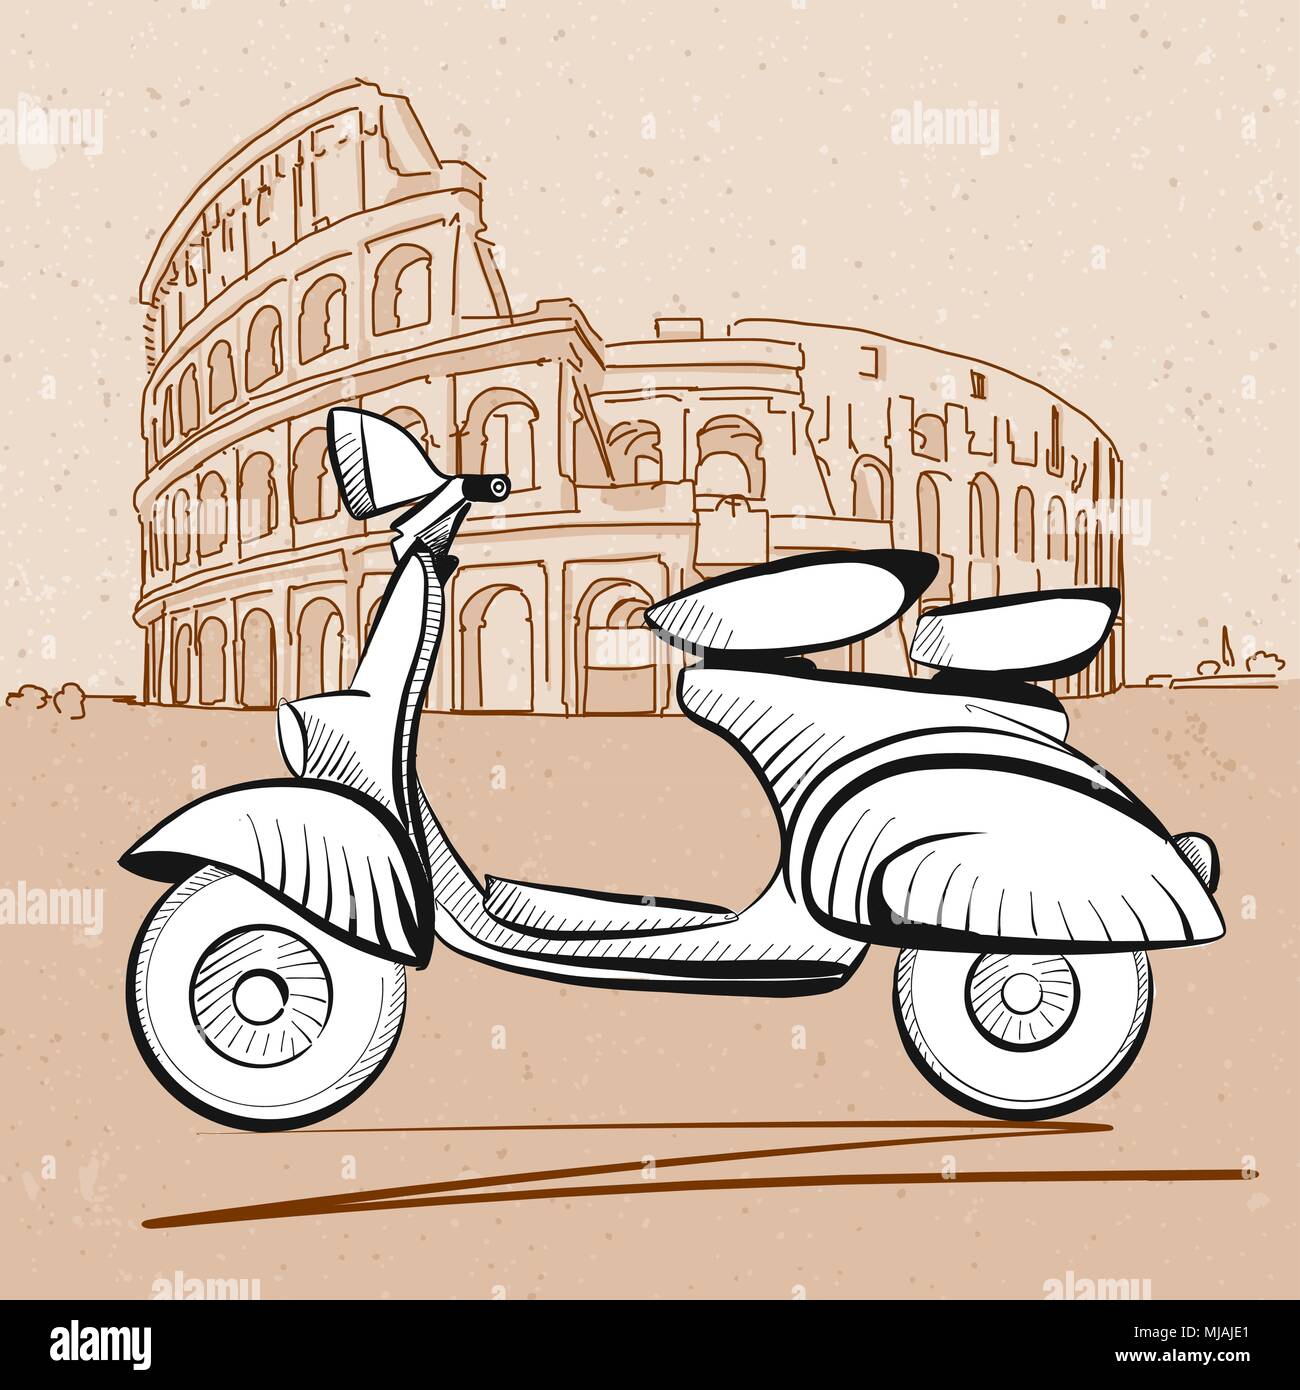 Scooter italiano davanti al Colosseo a Roma, disegnati a mano oggetti grafici vettoriali Illustrazione Vettoriale